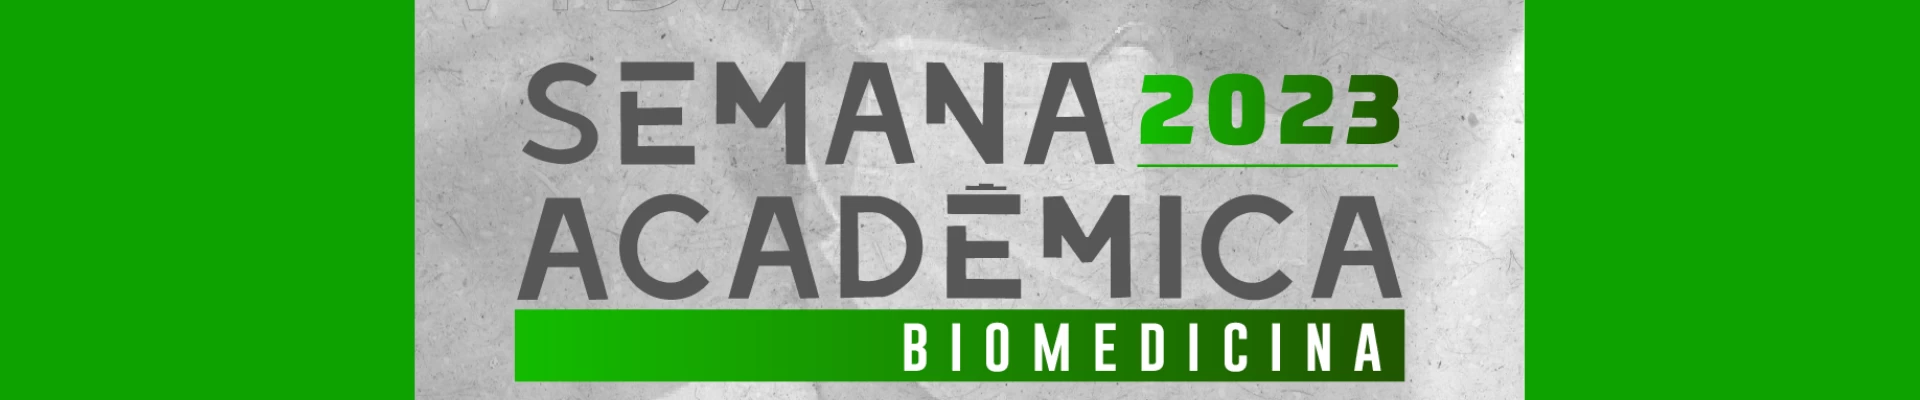 Semana Acadêmica de Biomedicina do UNIFAA